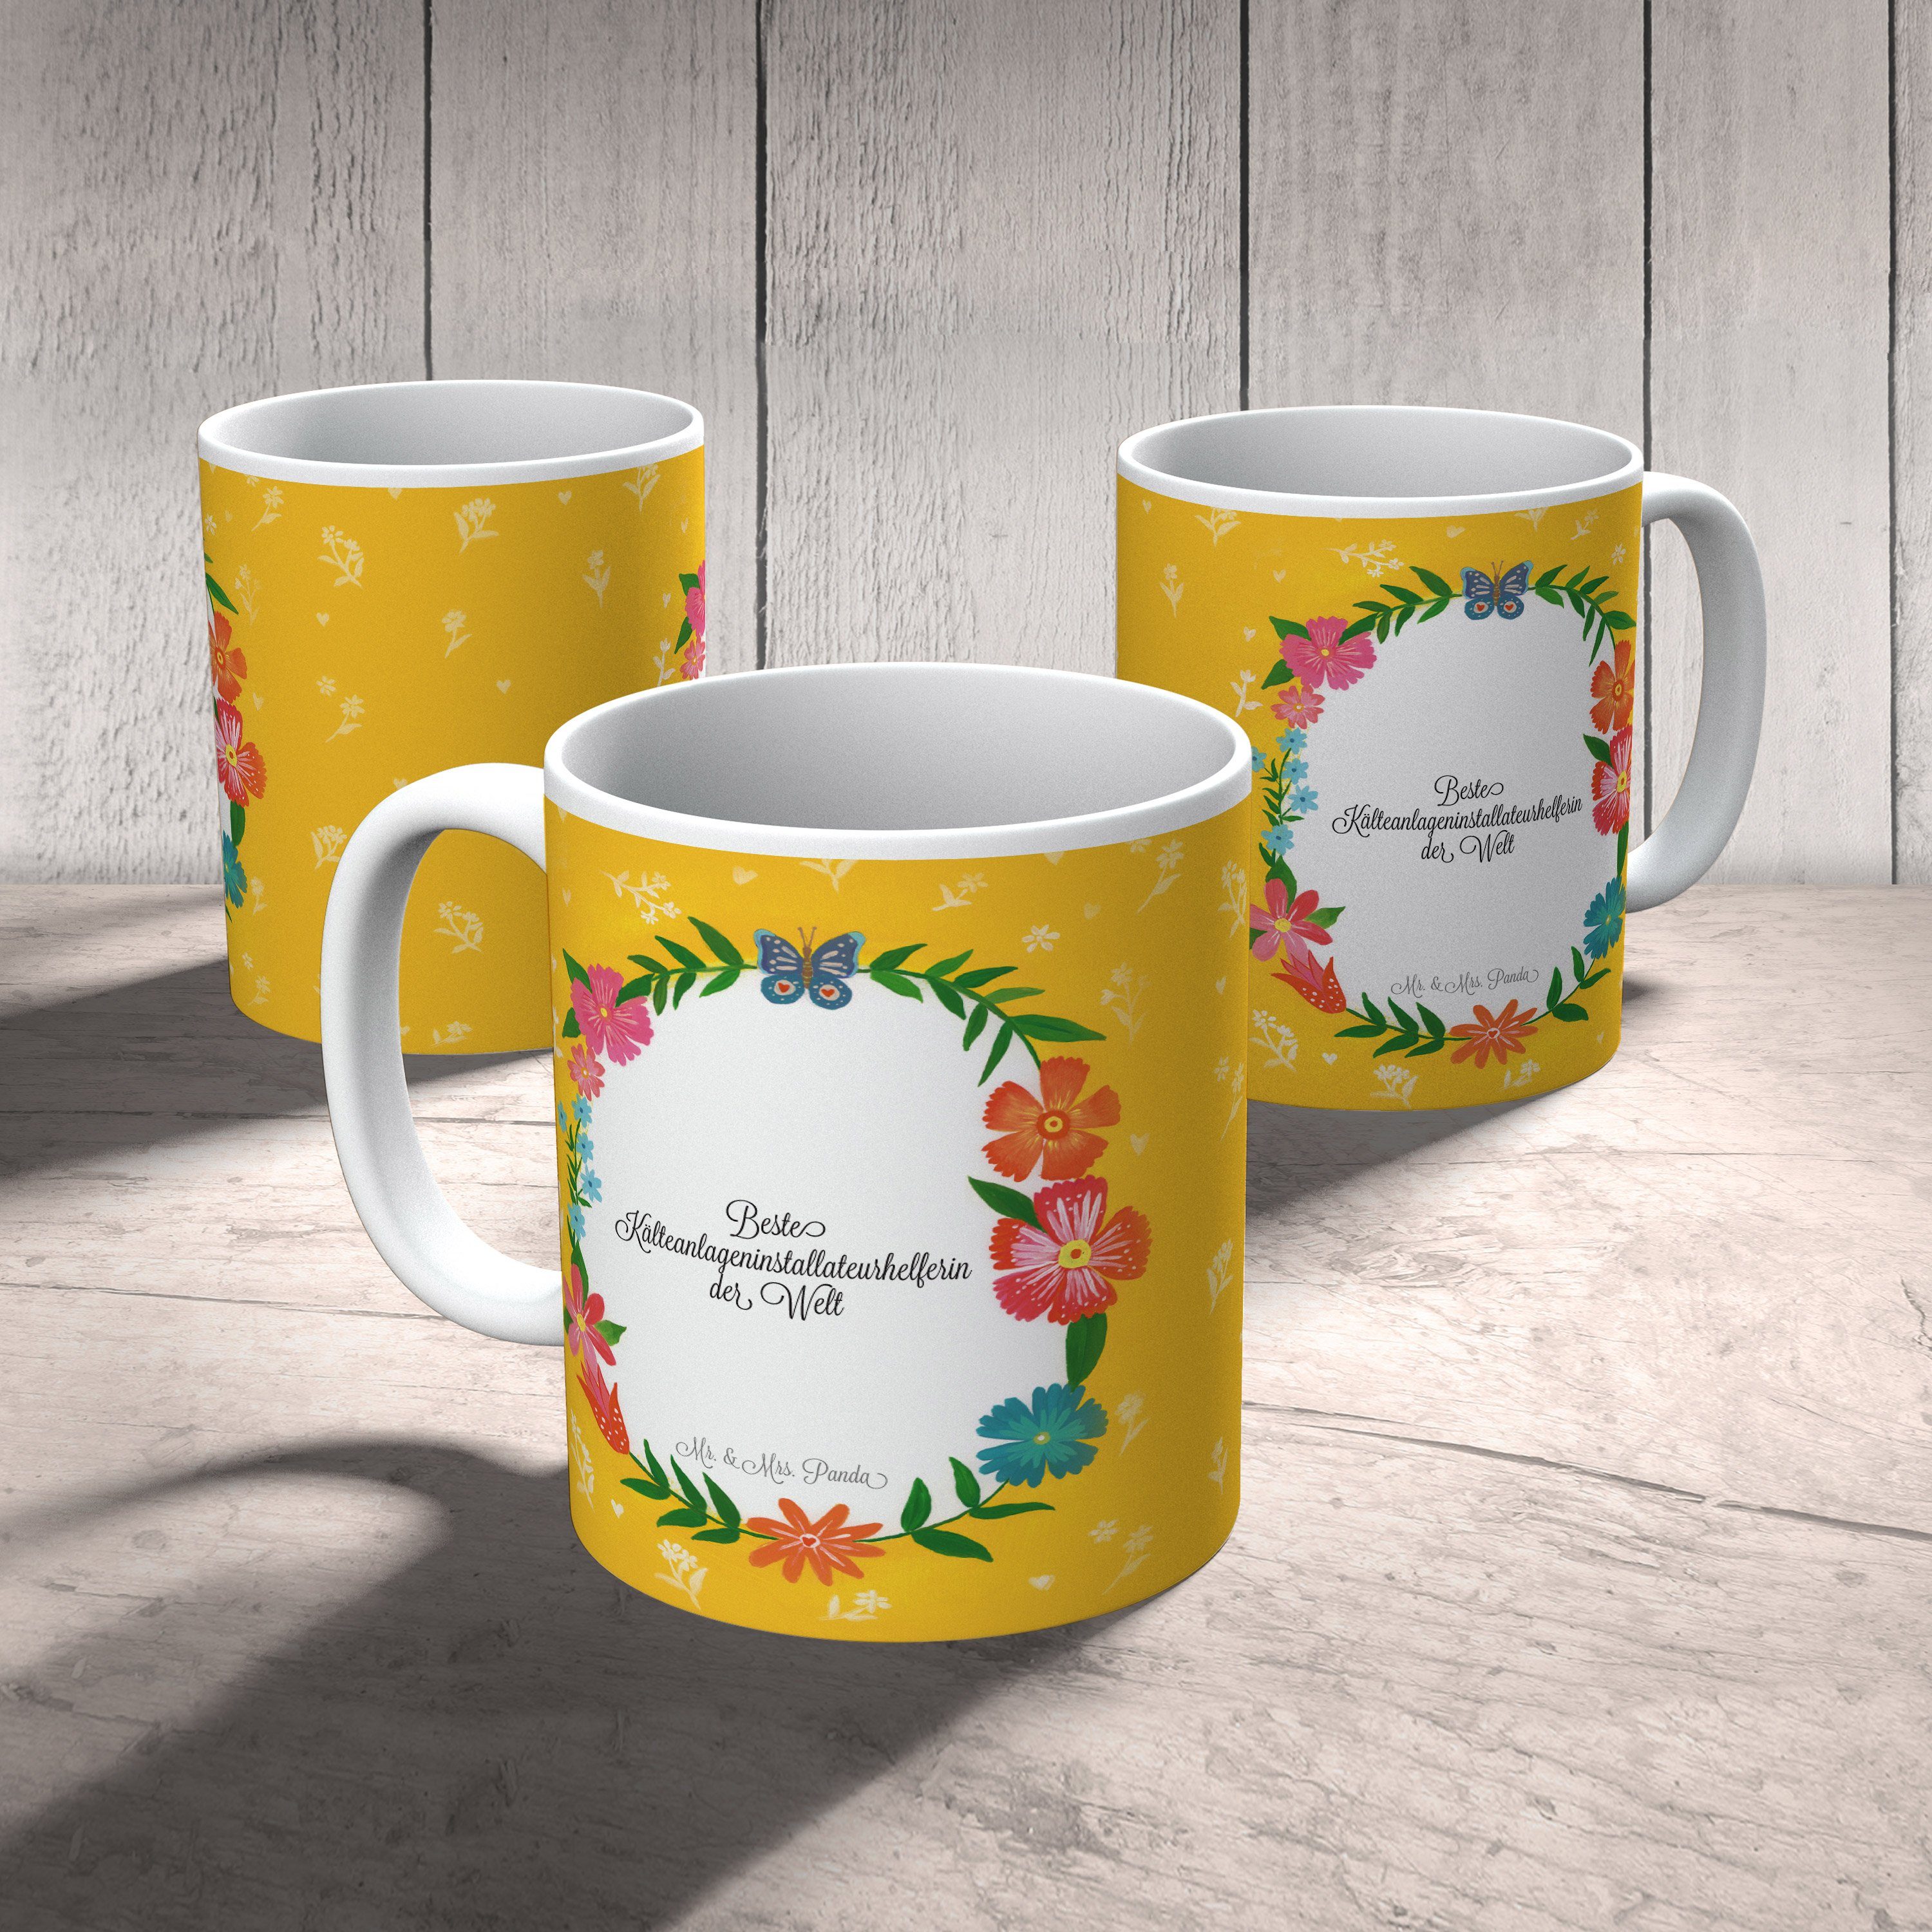 Geschenk, Keramik Tasse Porzellantasse, - Mrs. Mr. Panda Kälteanlageninstallateurhelferin & Geschenk,